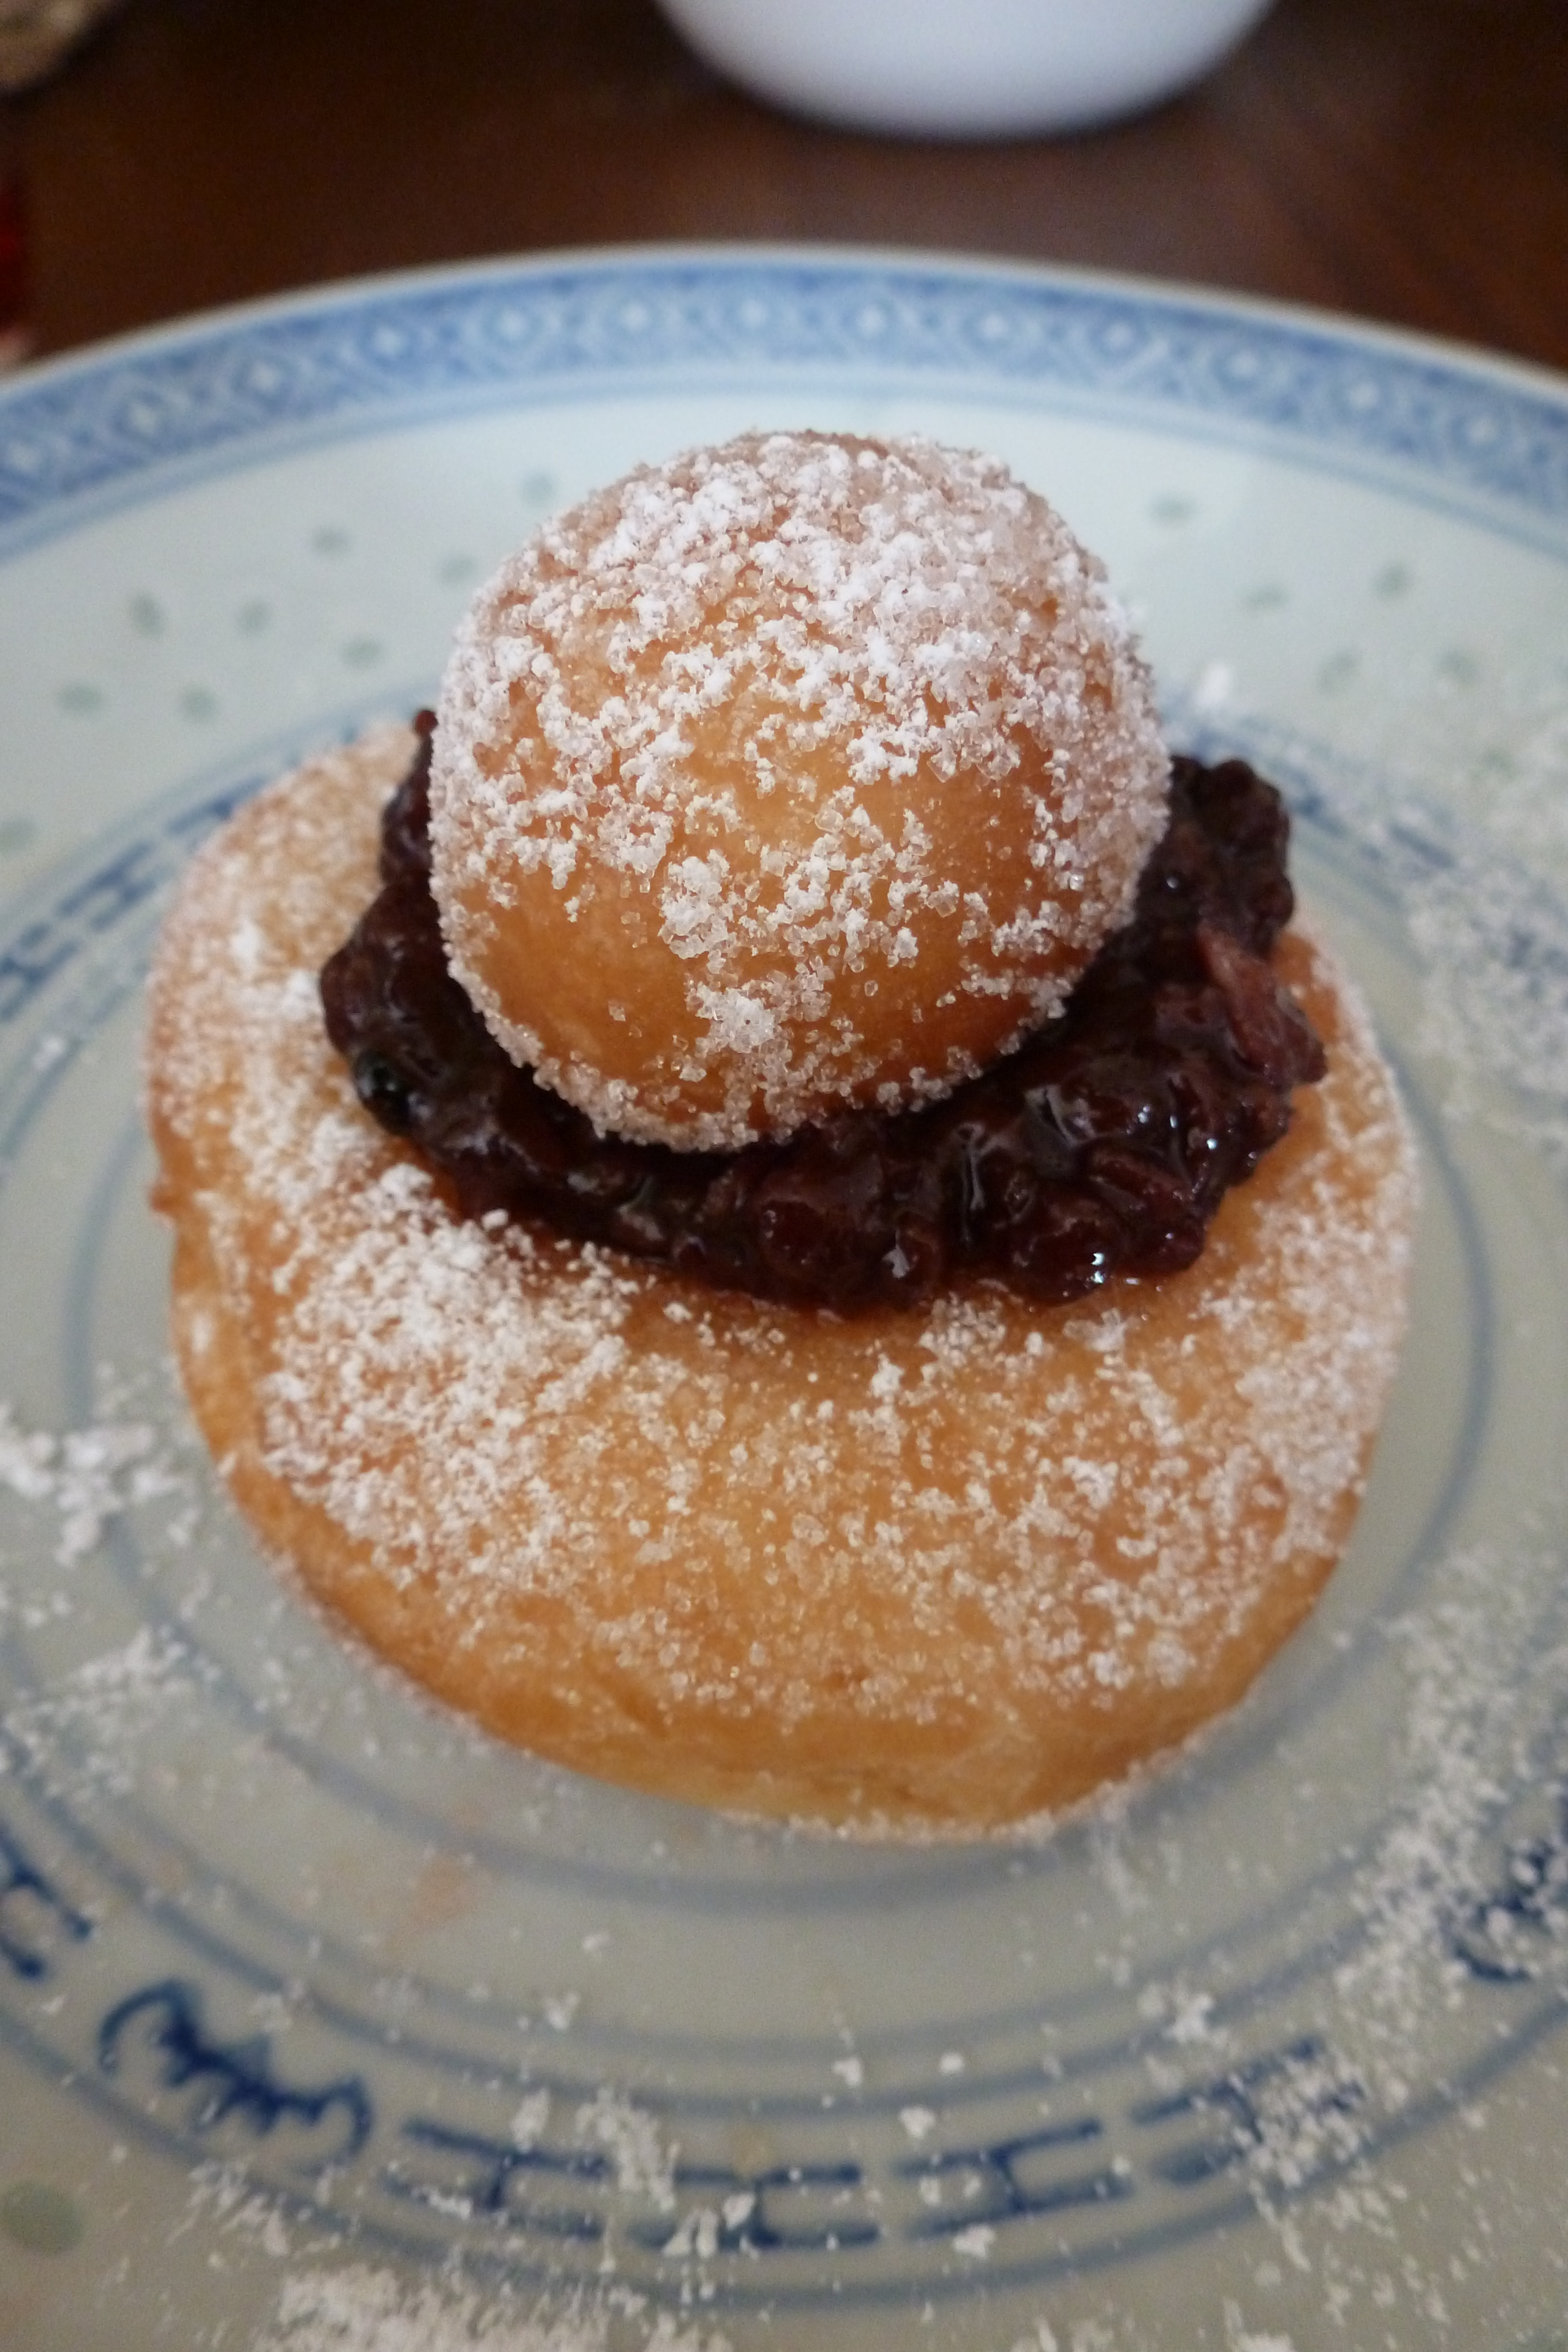 A raised doughnut with raspberry jam